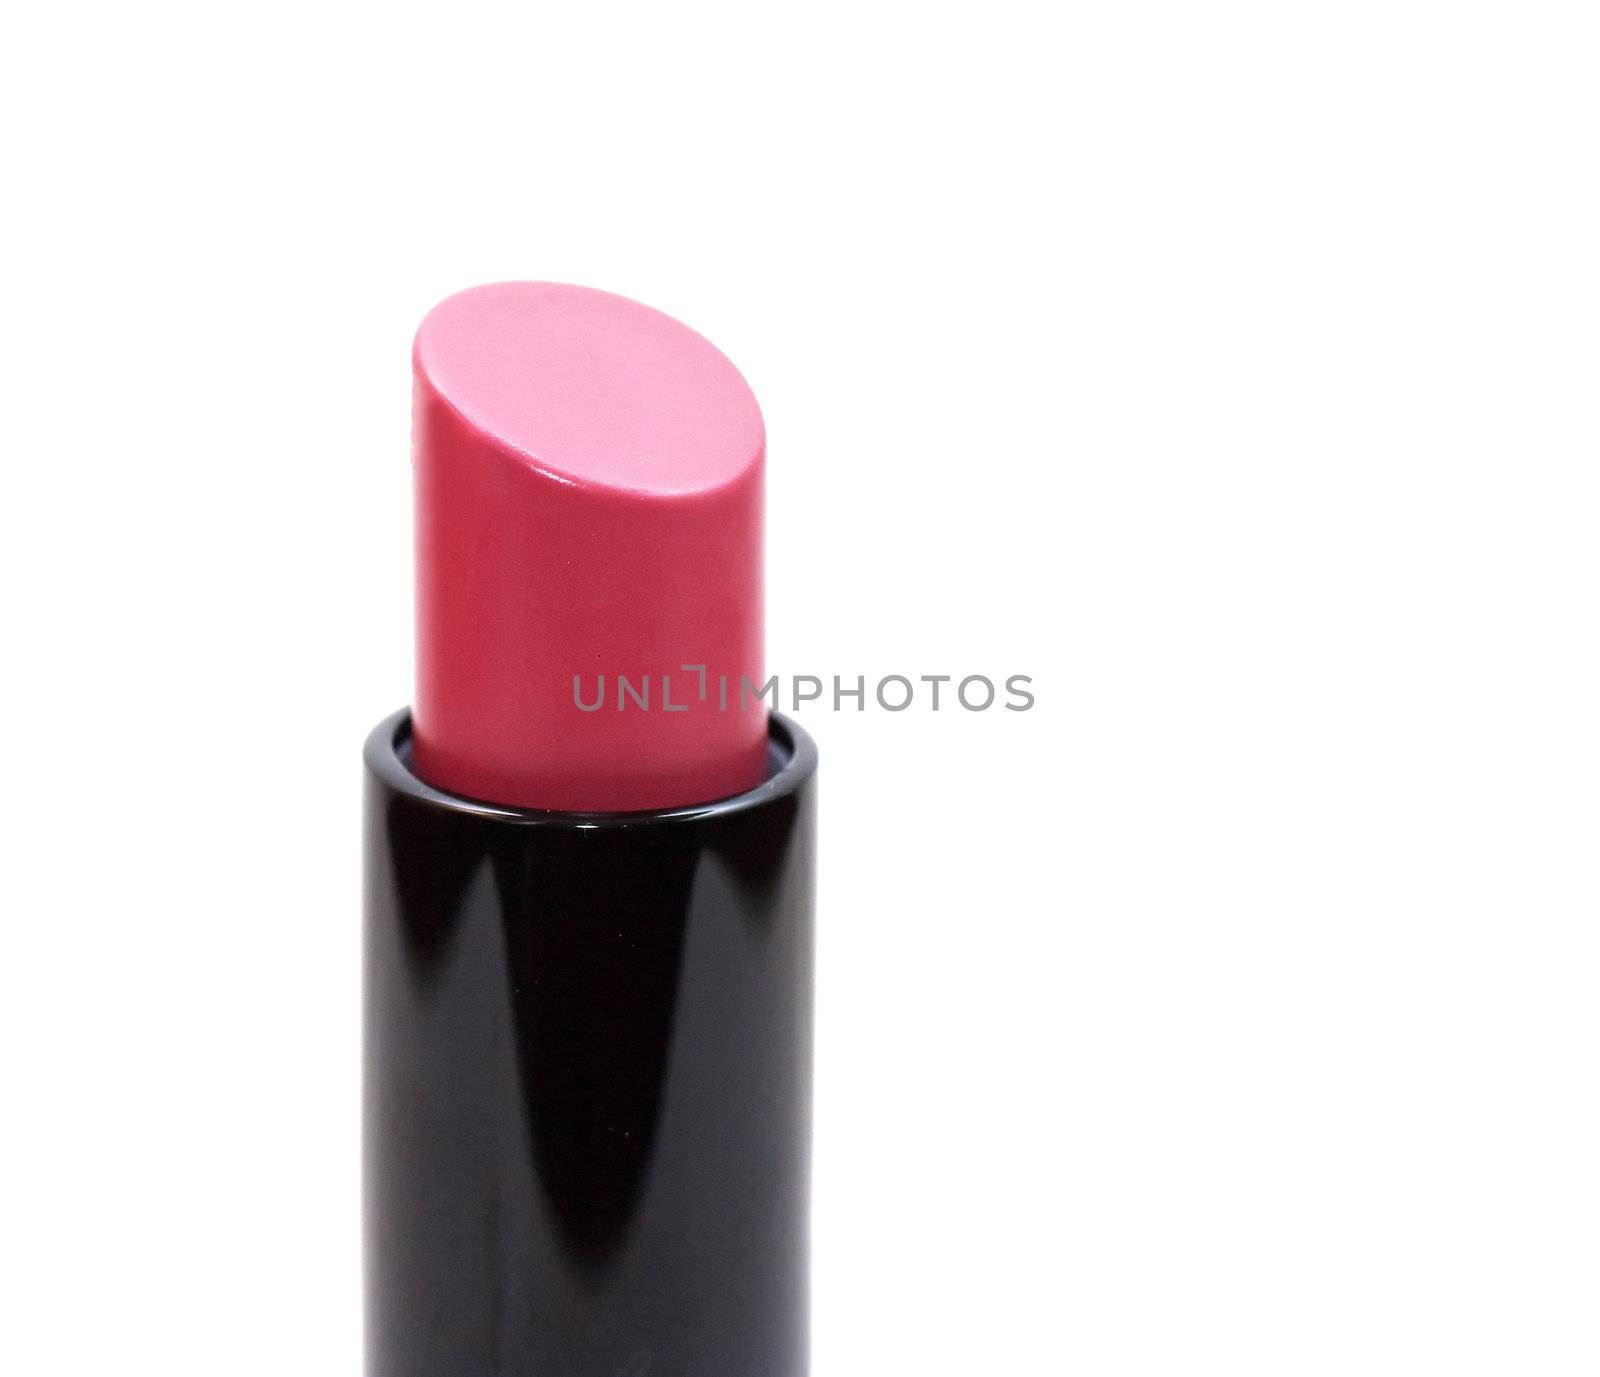 Lipstick by AGorohov